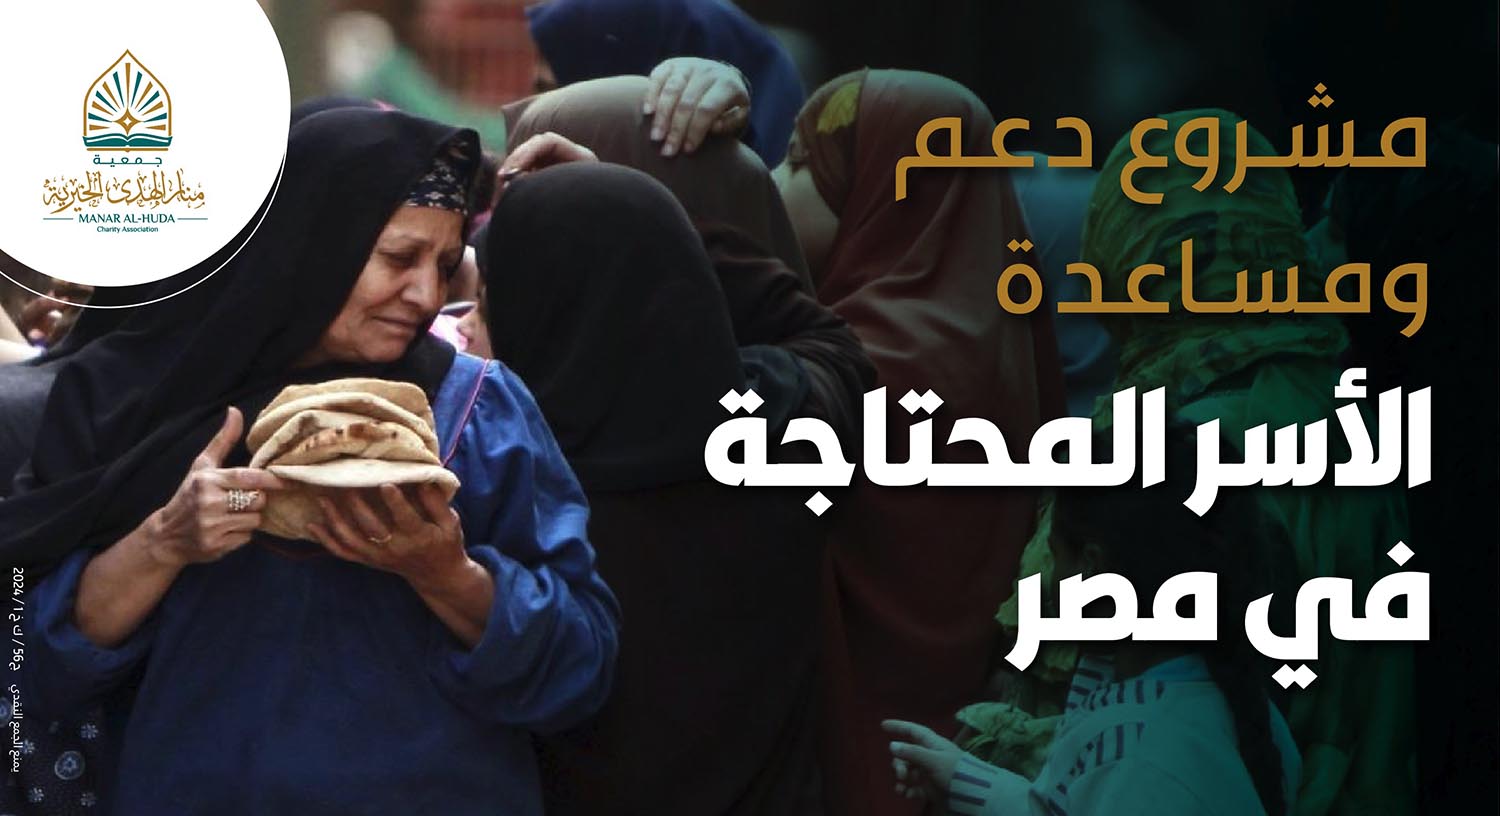 صورة مشروع دعم ومساعدة الأسر المحتاجة في مصر